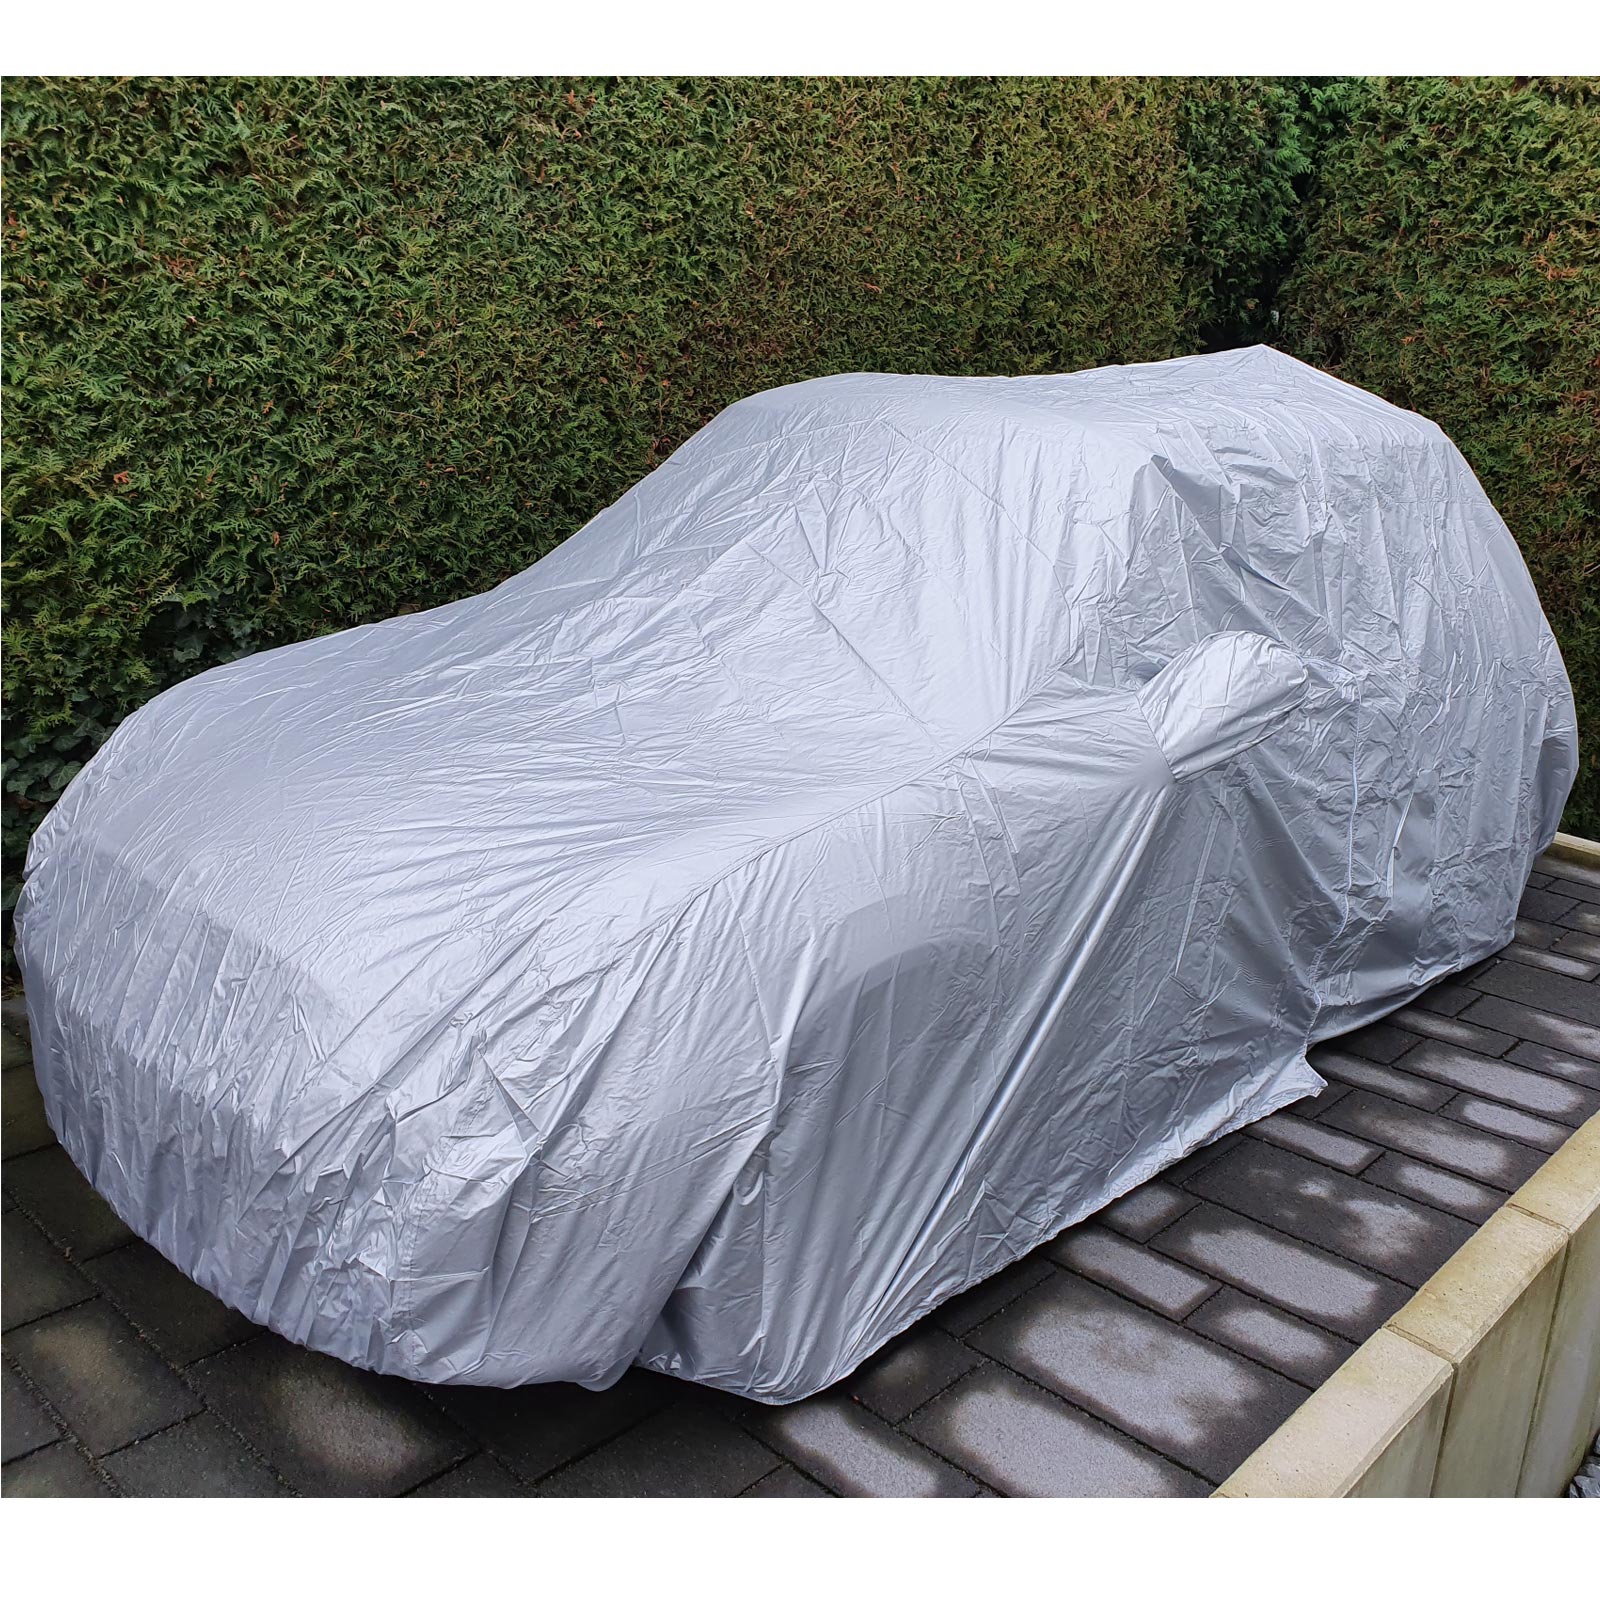 Autoabdeckung - Vollgarage - Car-Cover Outdoor Waterproof für VW Golf